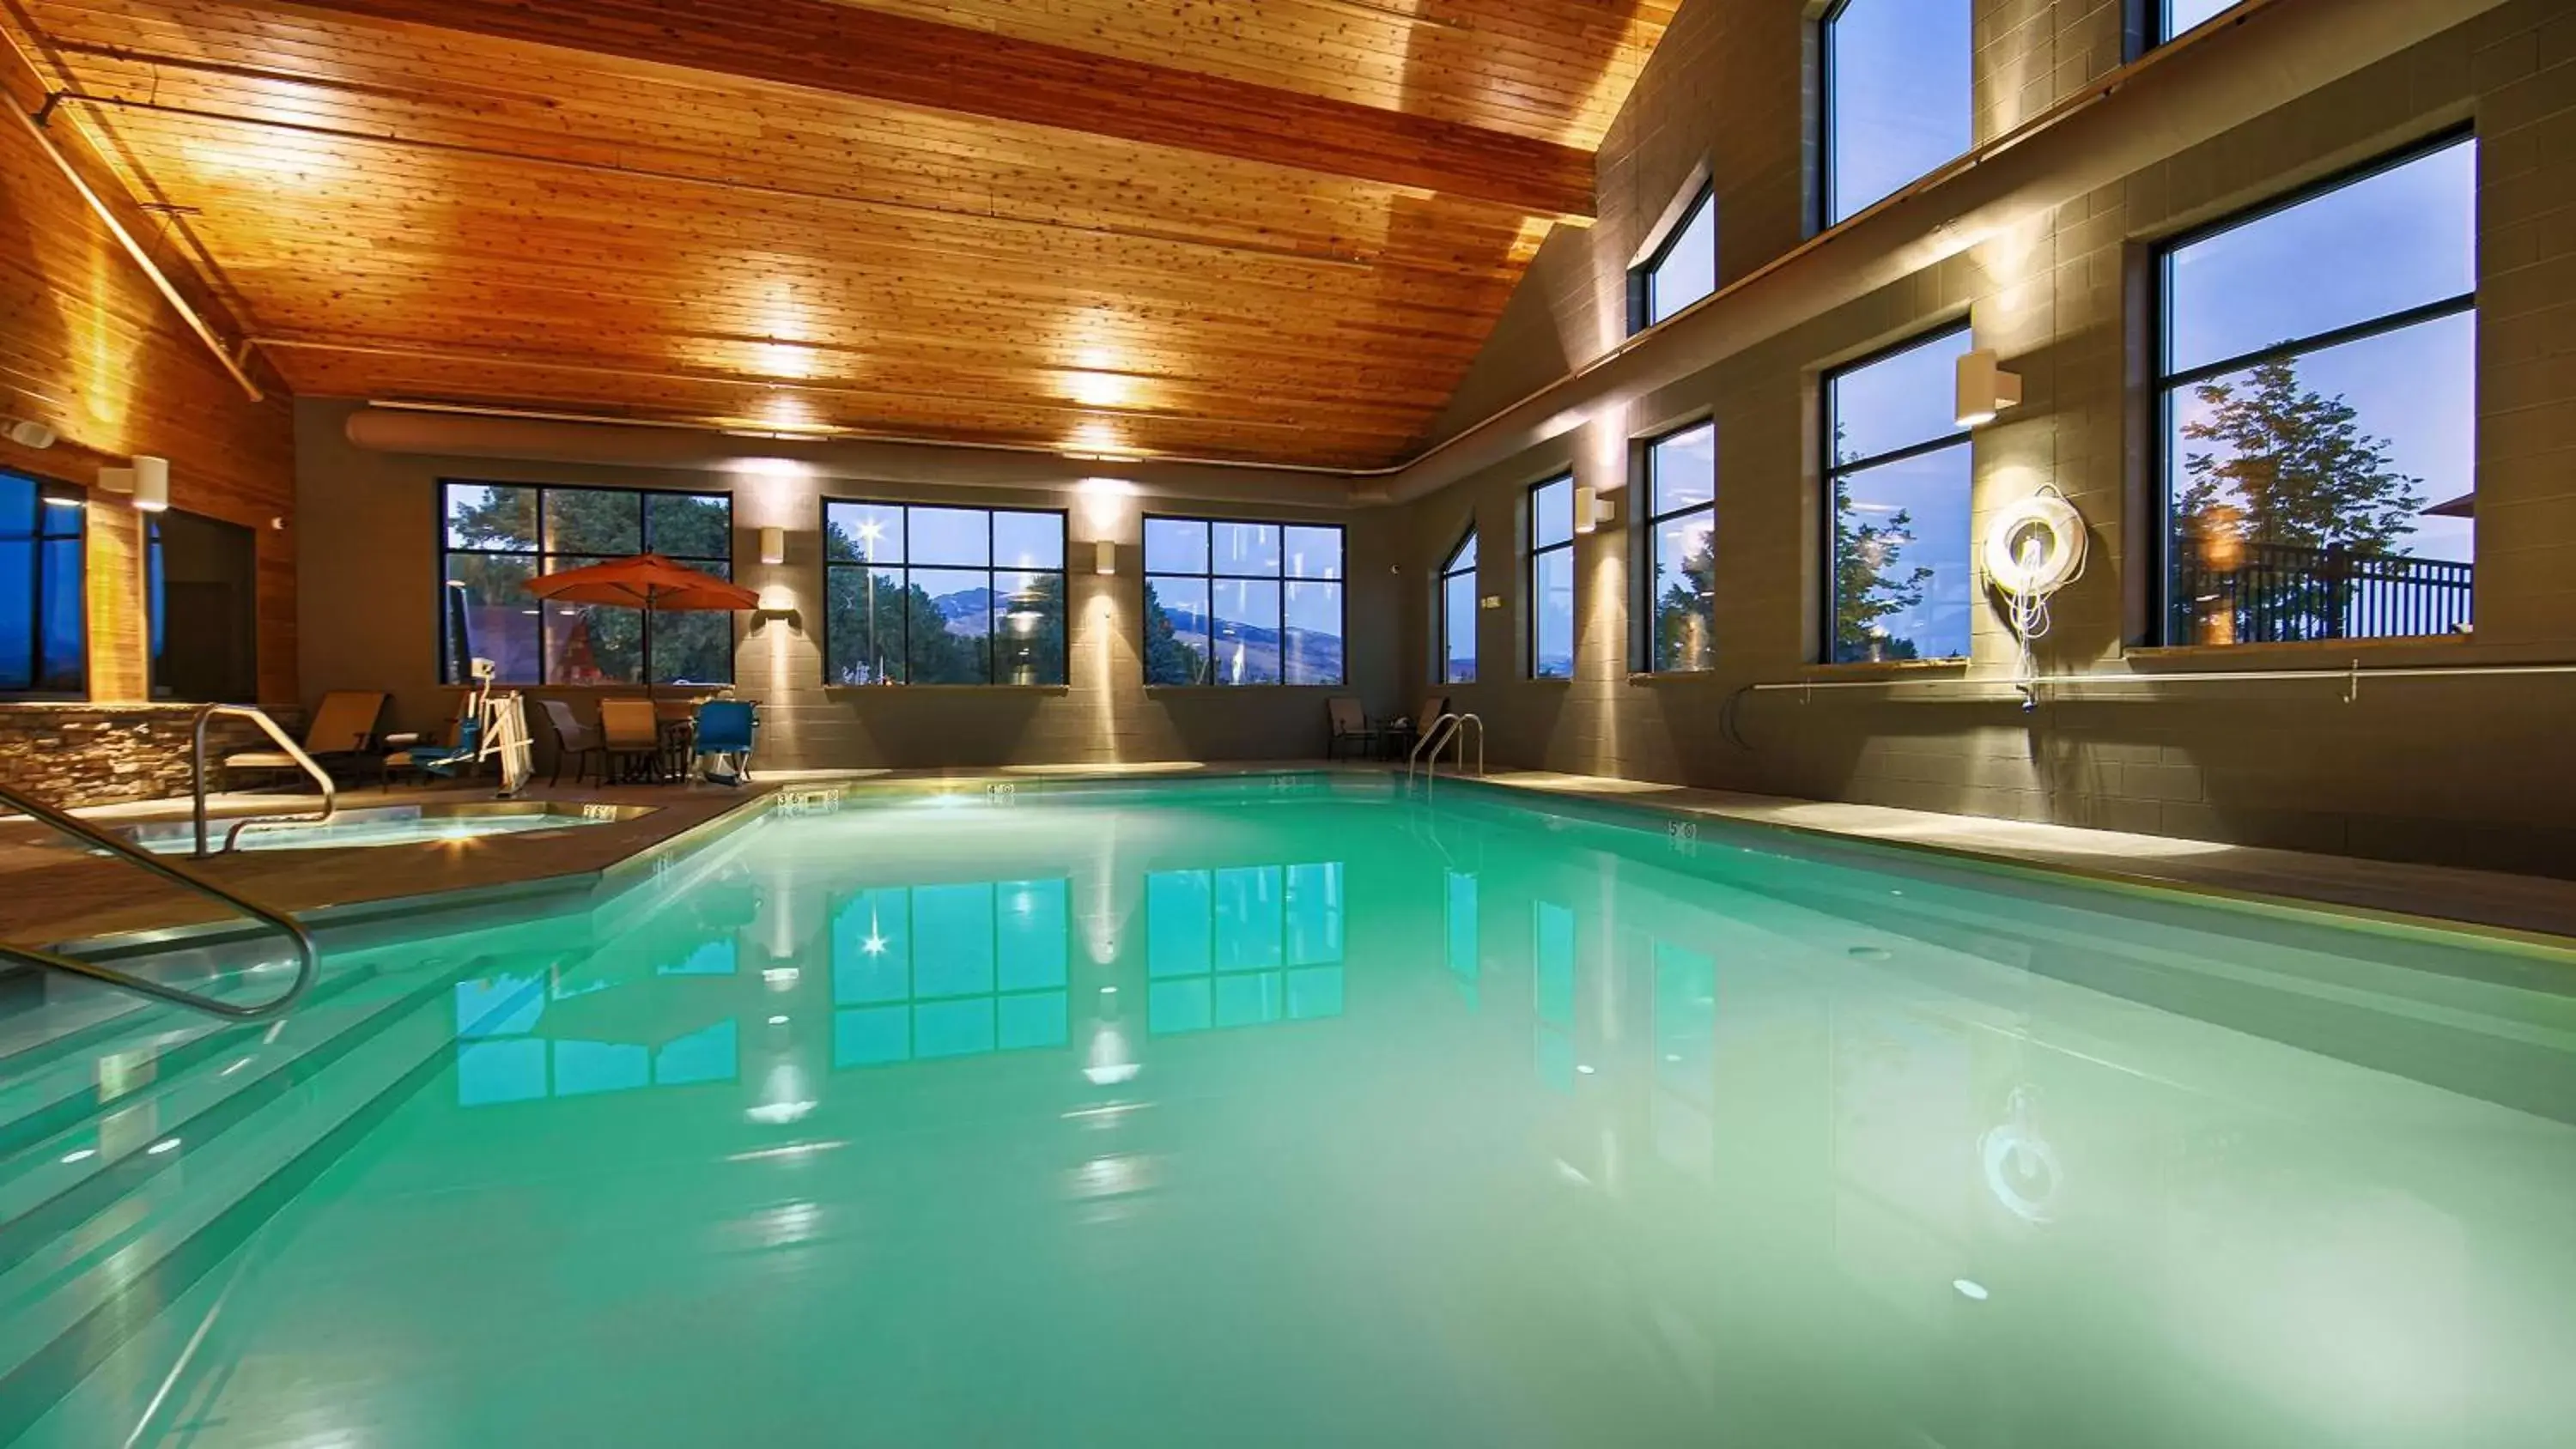 On site, Swimming Pool in Best Western Premier Ivy Inn & Suites